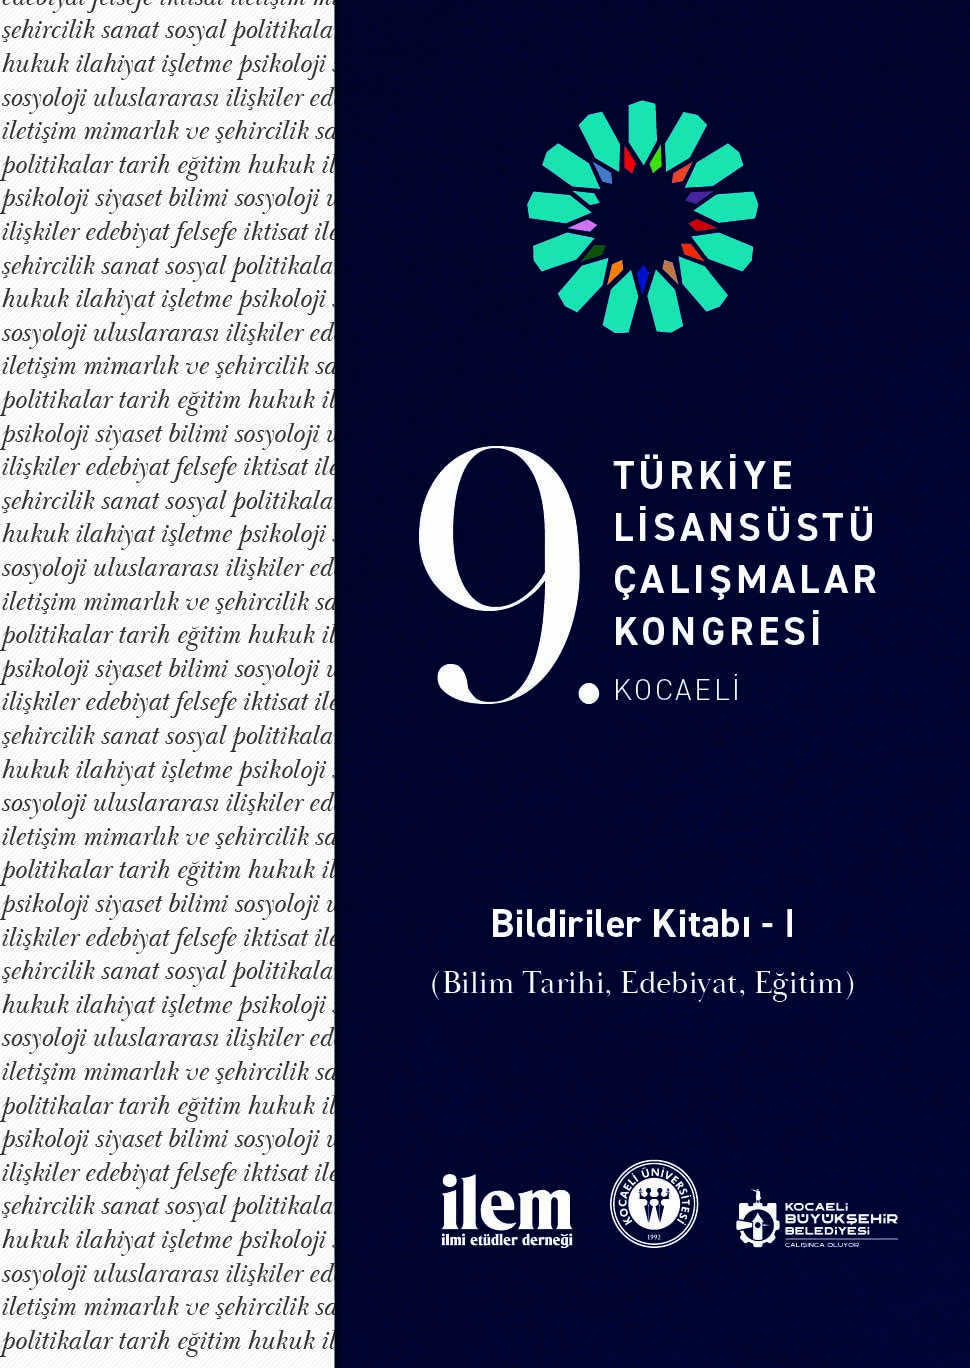 9. Türkiye Lisansüstü Çalışmalar Kongresi Bildiriler Kitabı